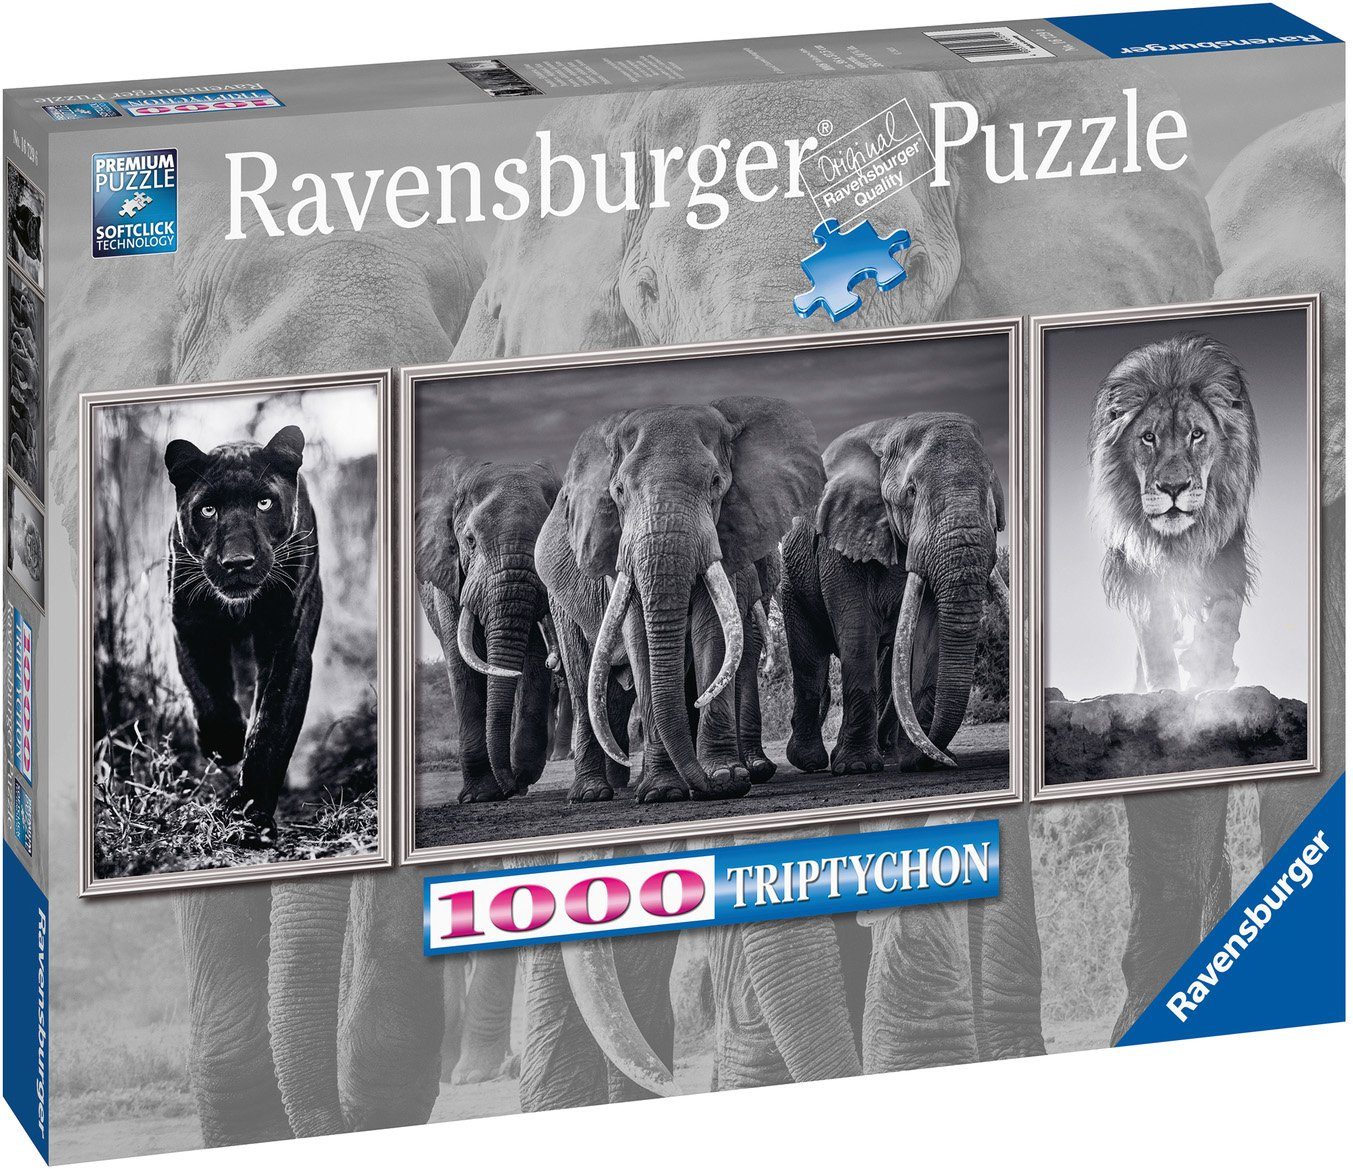 Löwe, Puzzleteile, 1000 Triptychon; - Panter, weltweit; Wald Elefanten, in - Made Germany schützt Puzzle Ravensburger FSC®